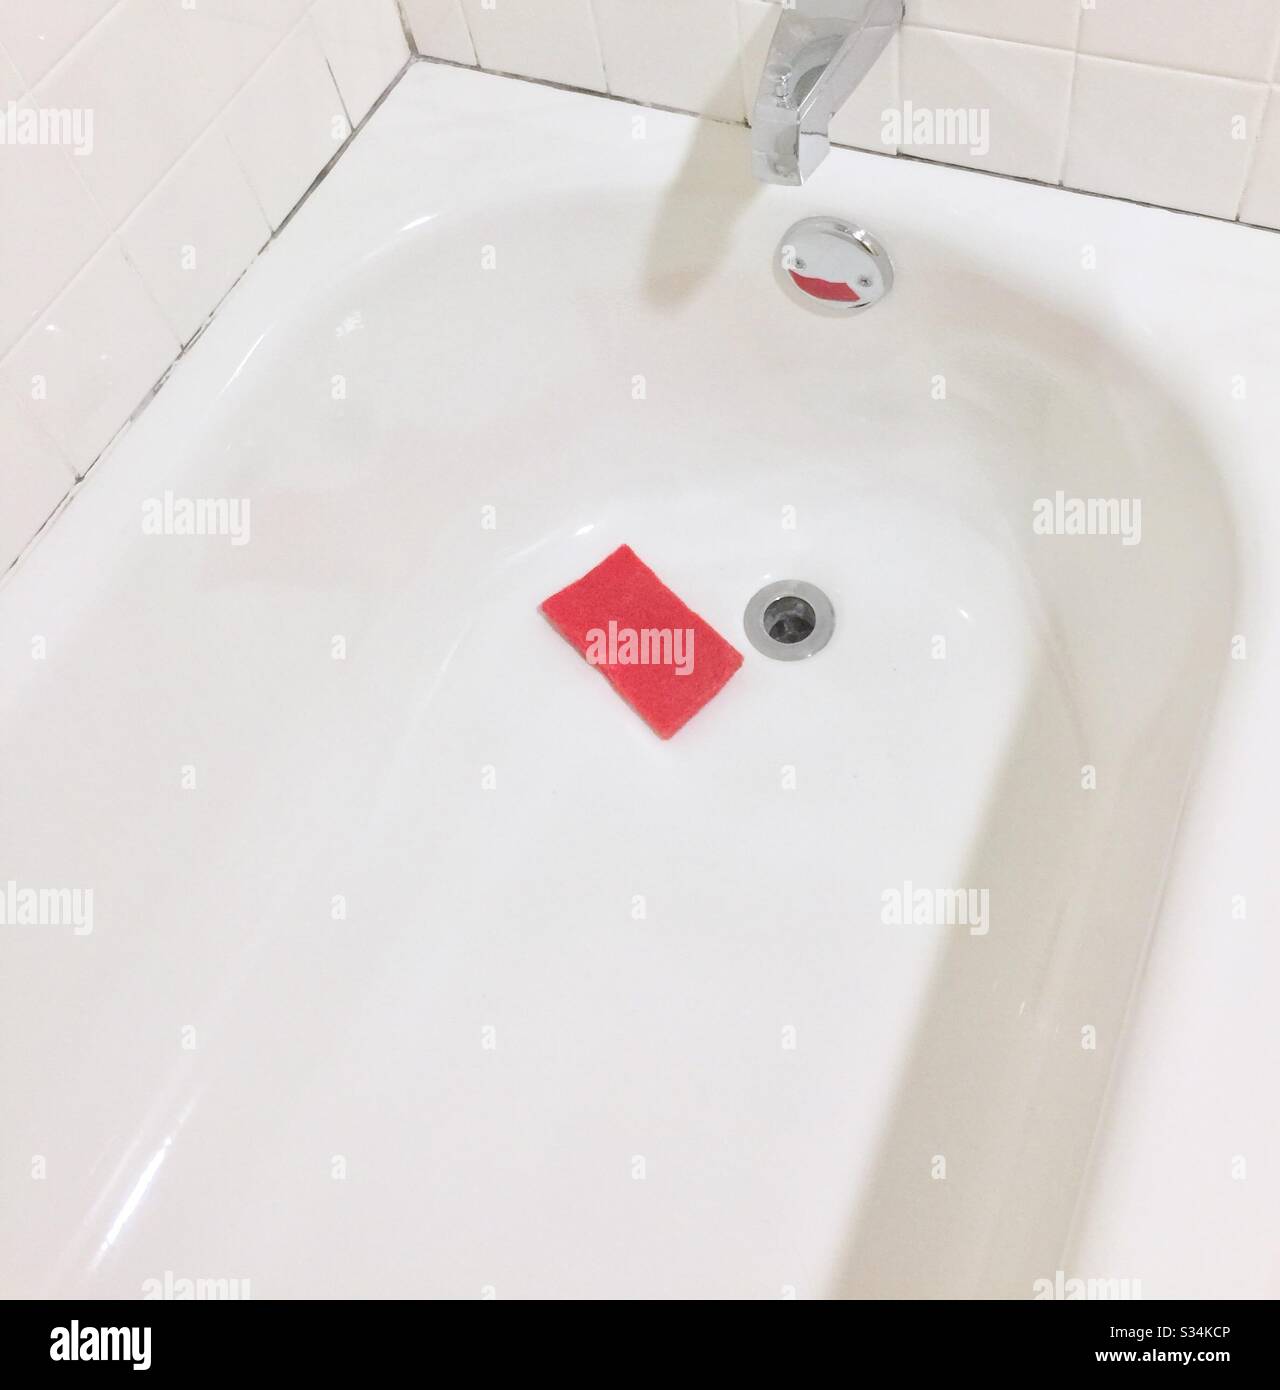 Vasca da bagno bianca luccicante con spugna rossa per lavaggio nei pressi dello scarico del bagno. Foto Stock